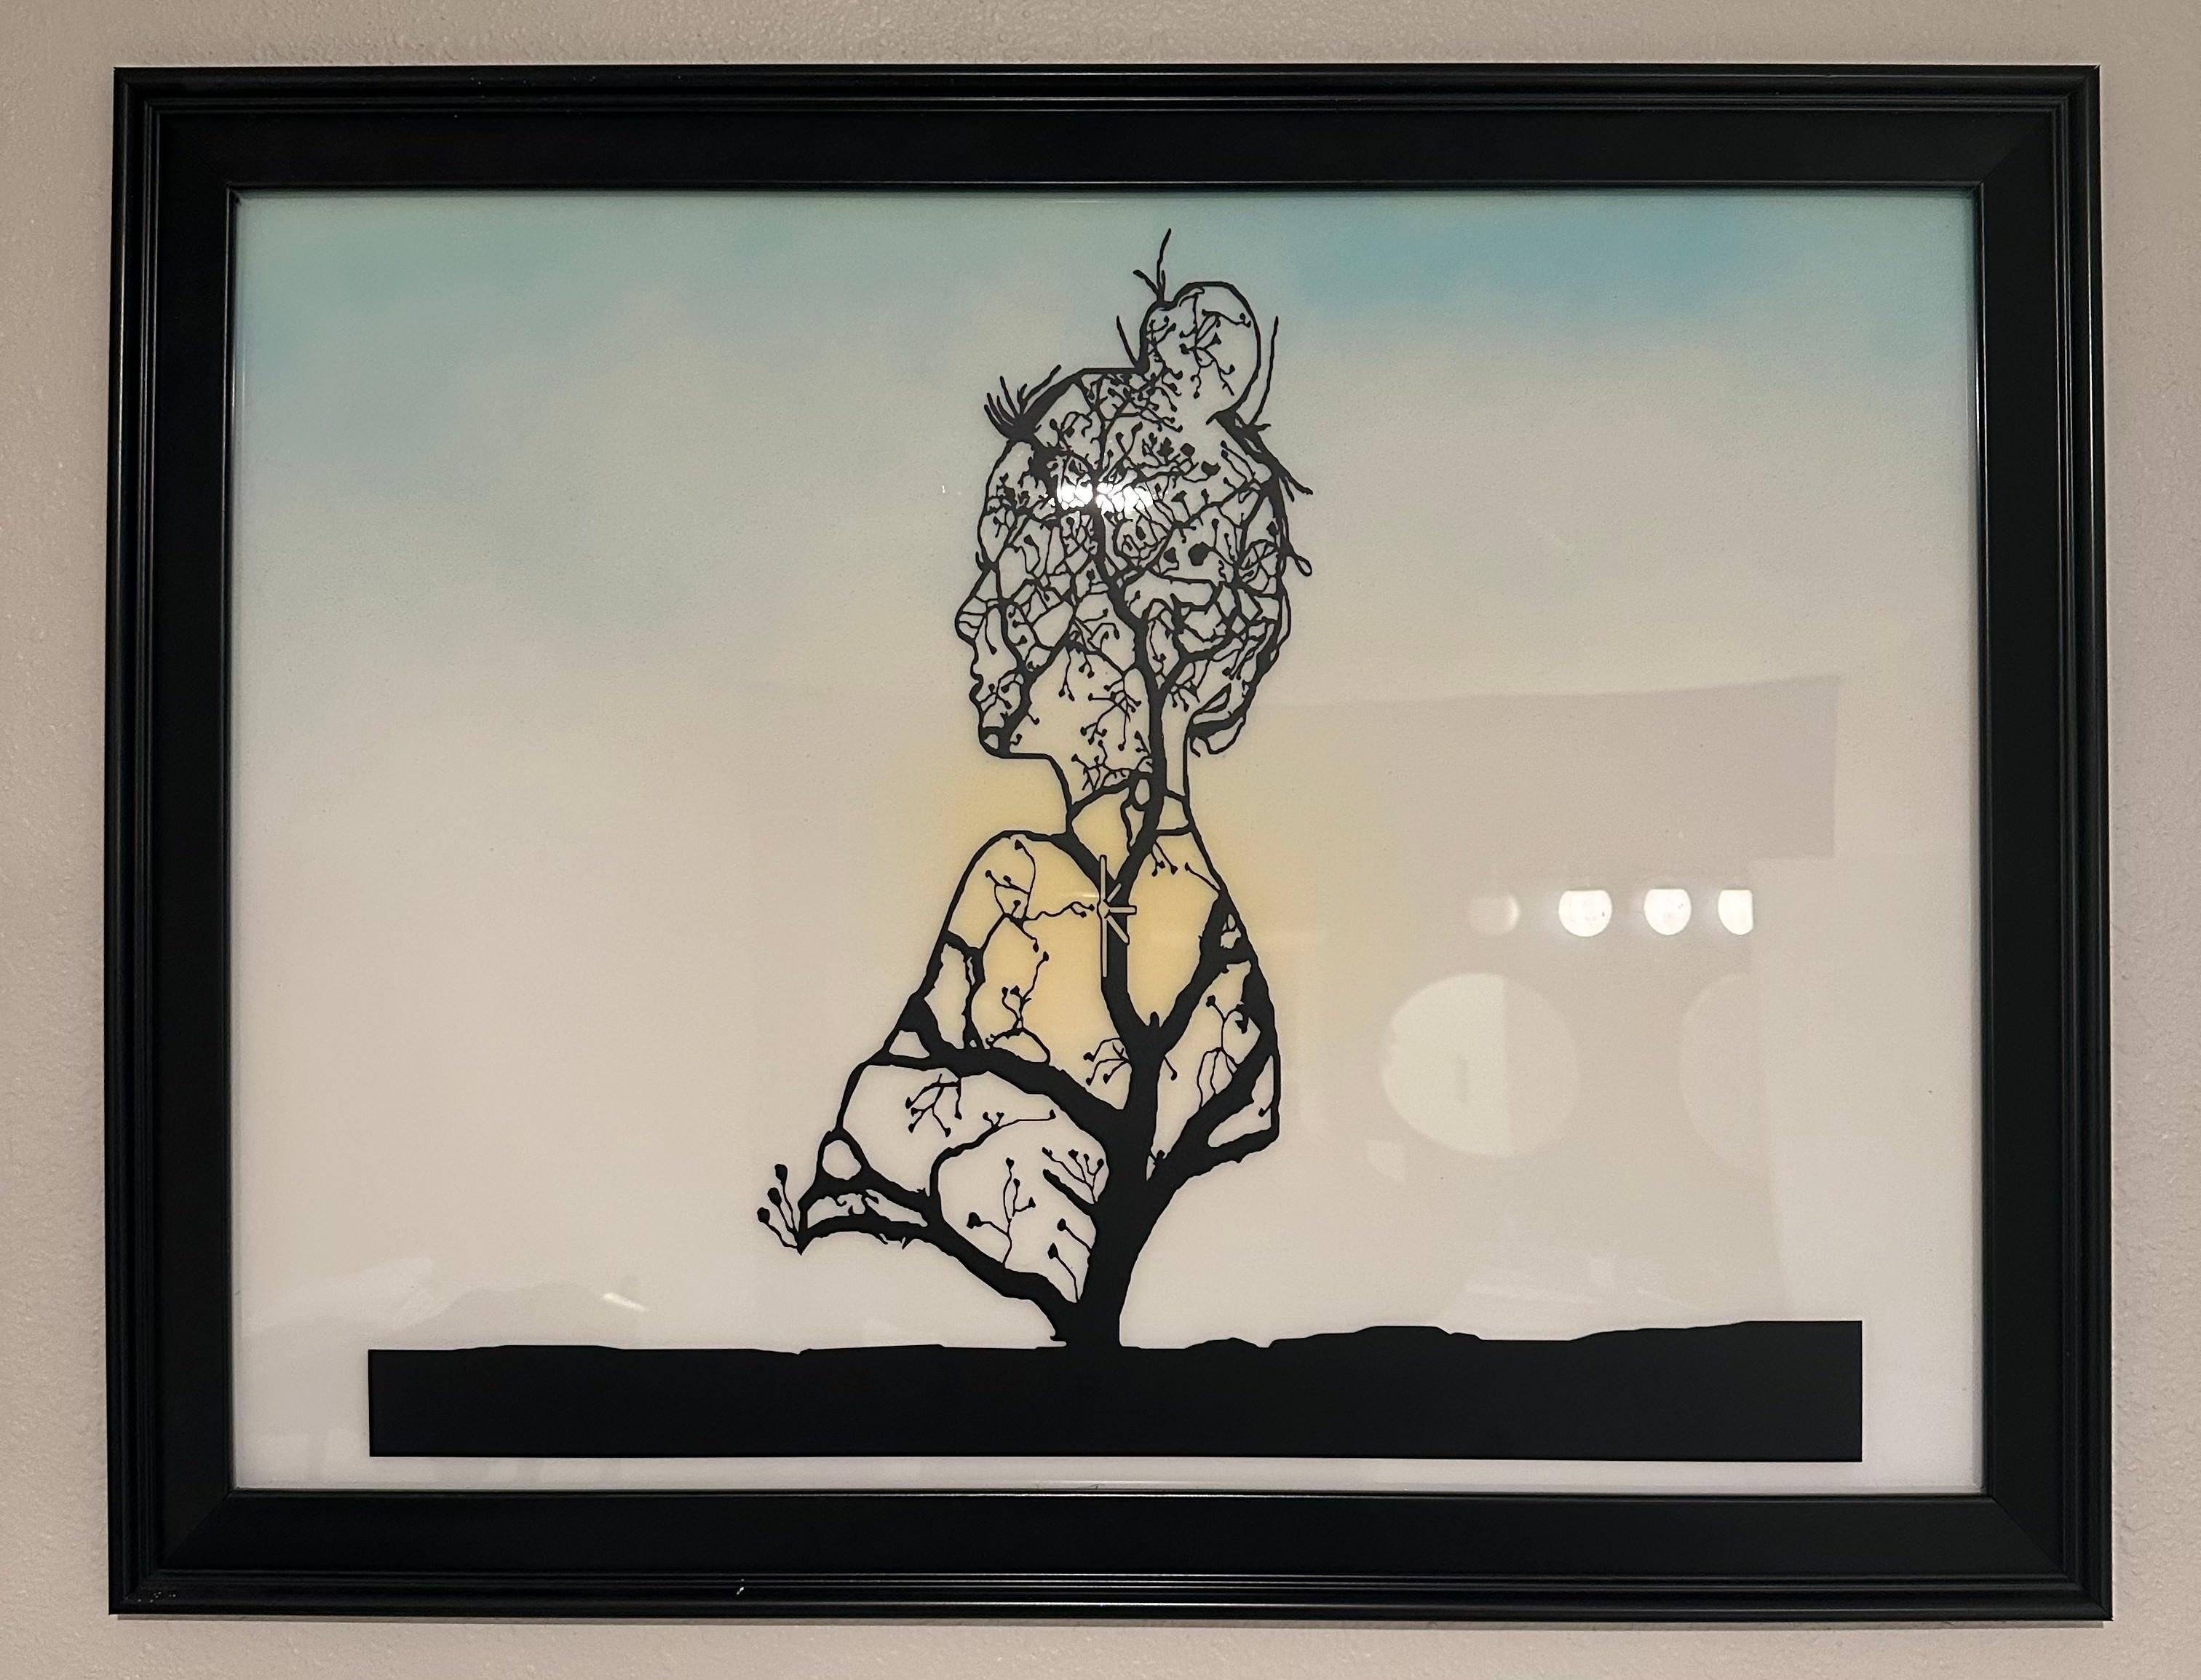 Ofelia's Tree - Contemporary Mixed Media Art by Anthony Moreno